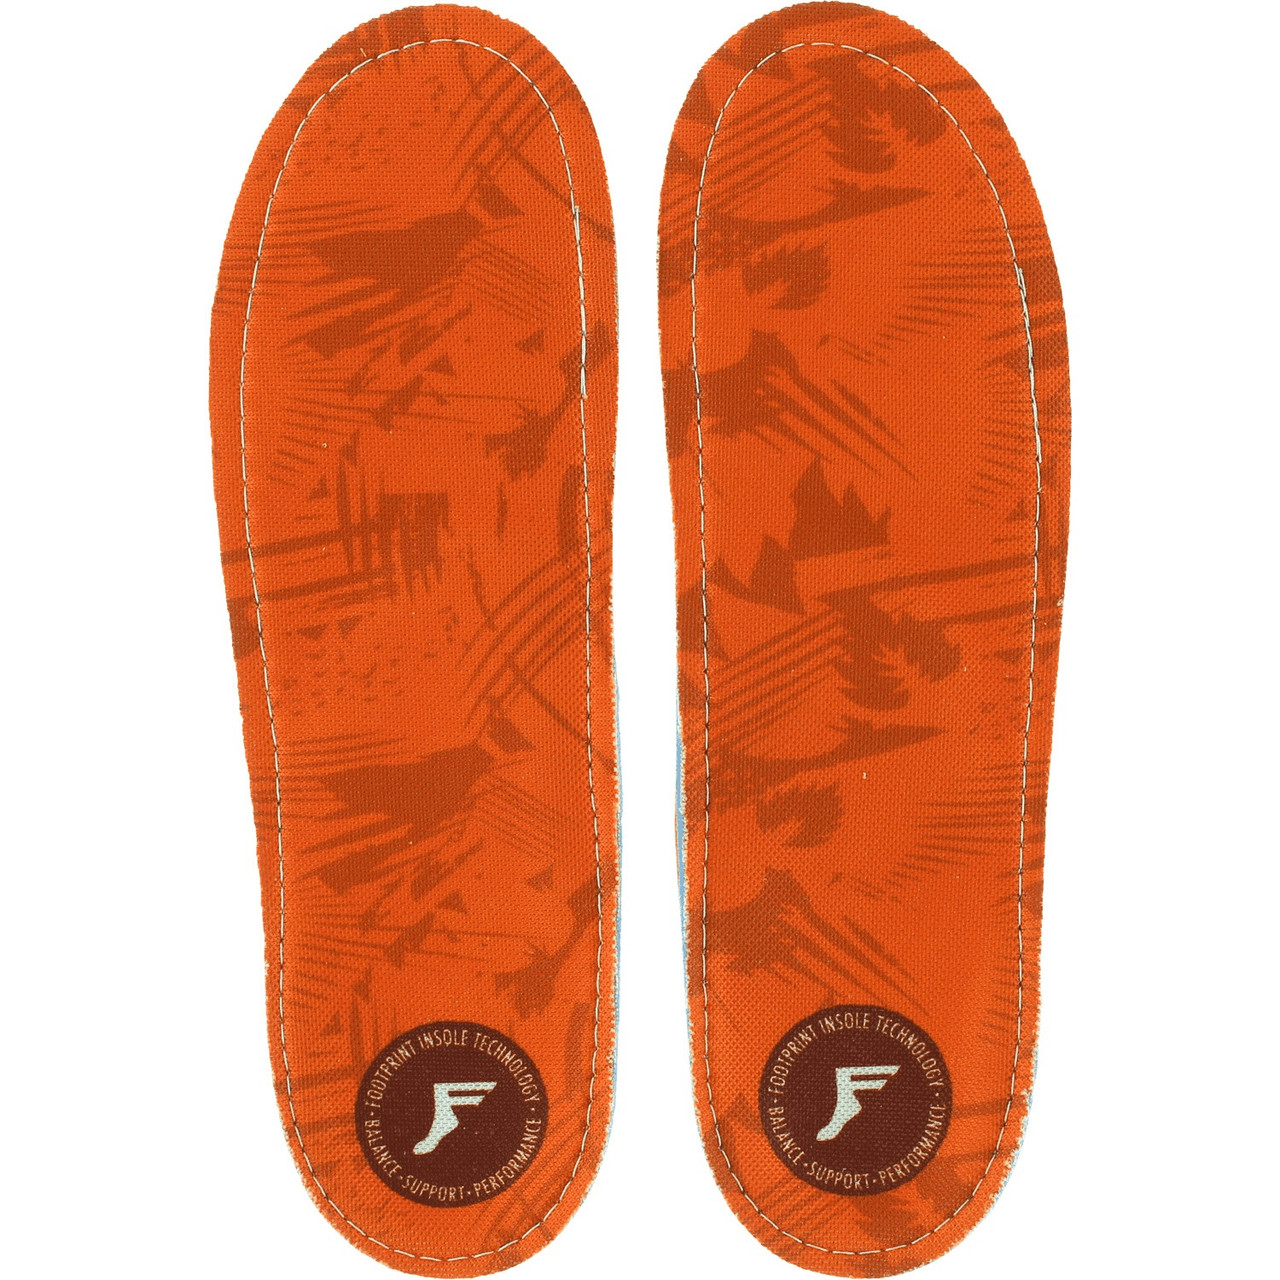 Footprint King Foam Insoles Camo Orange 6/6.5